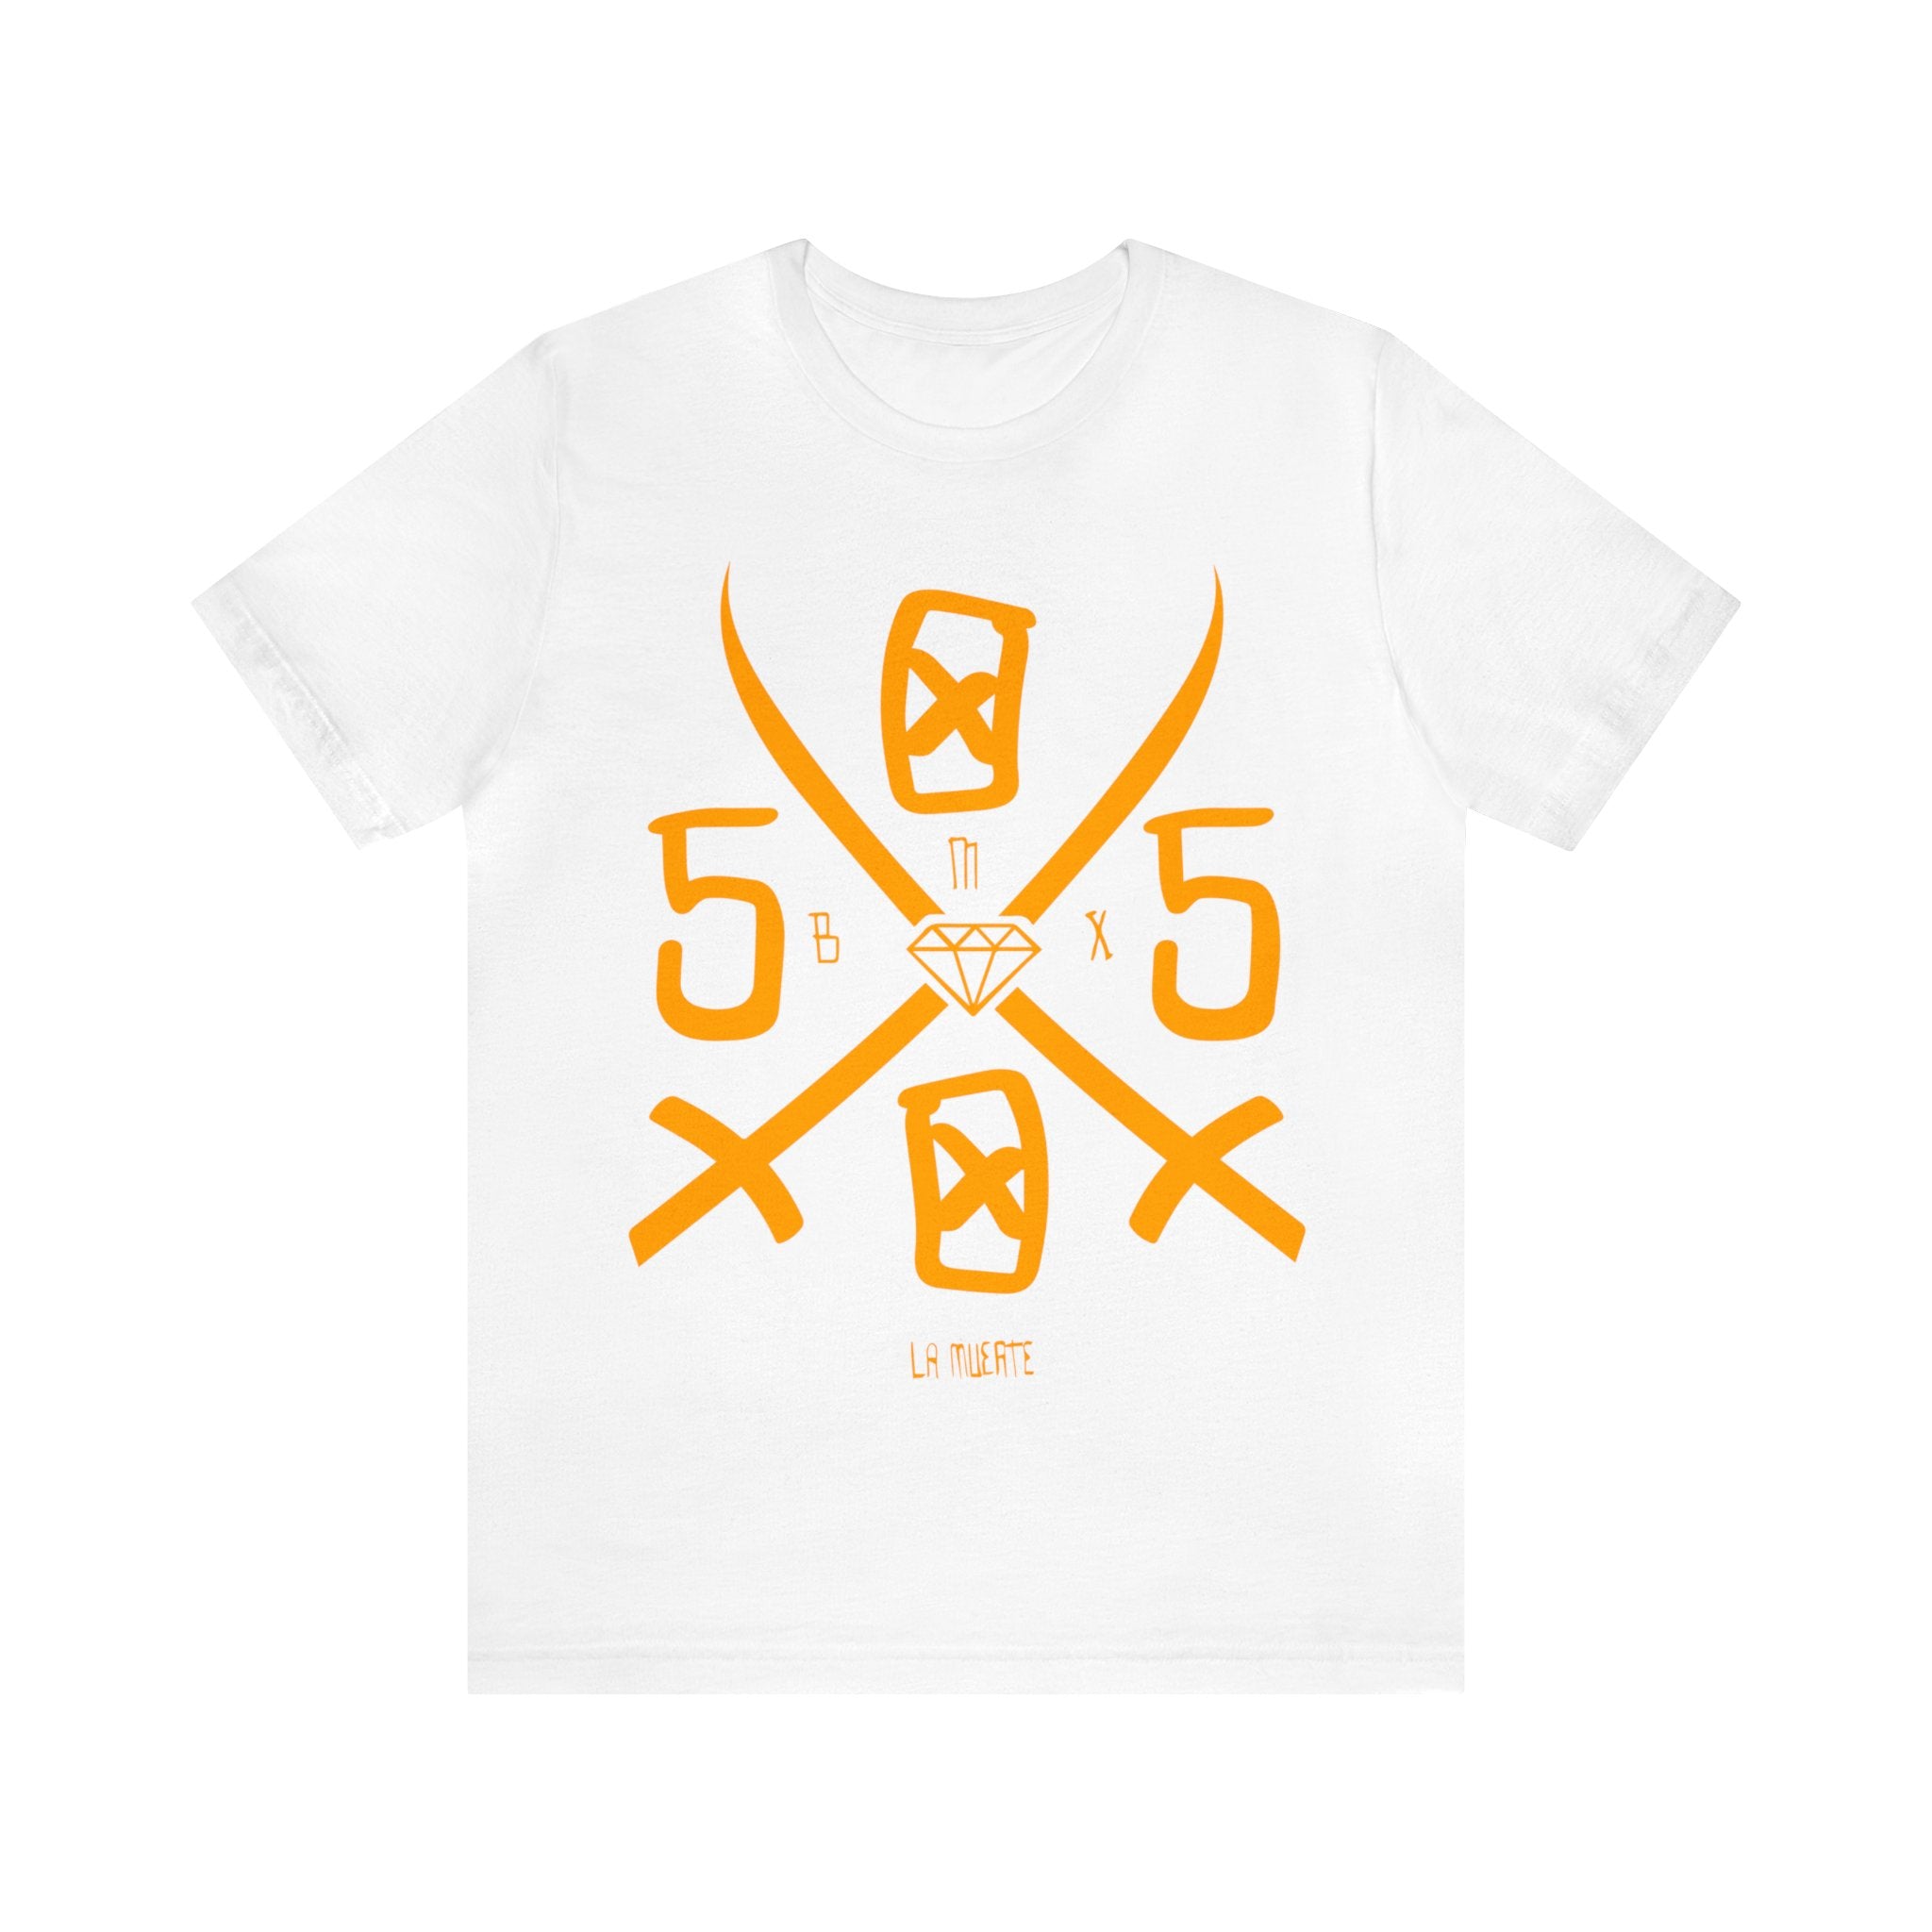 5050bmx La Muerte Swords (Orange) - Short Sleeve Tee